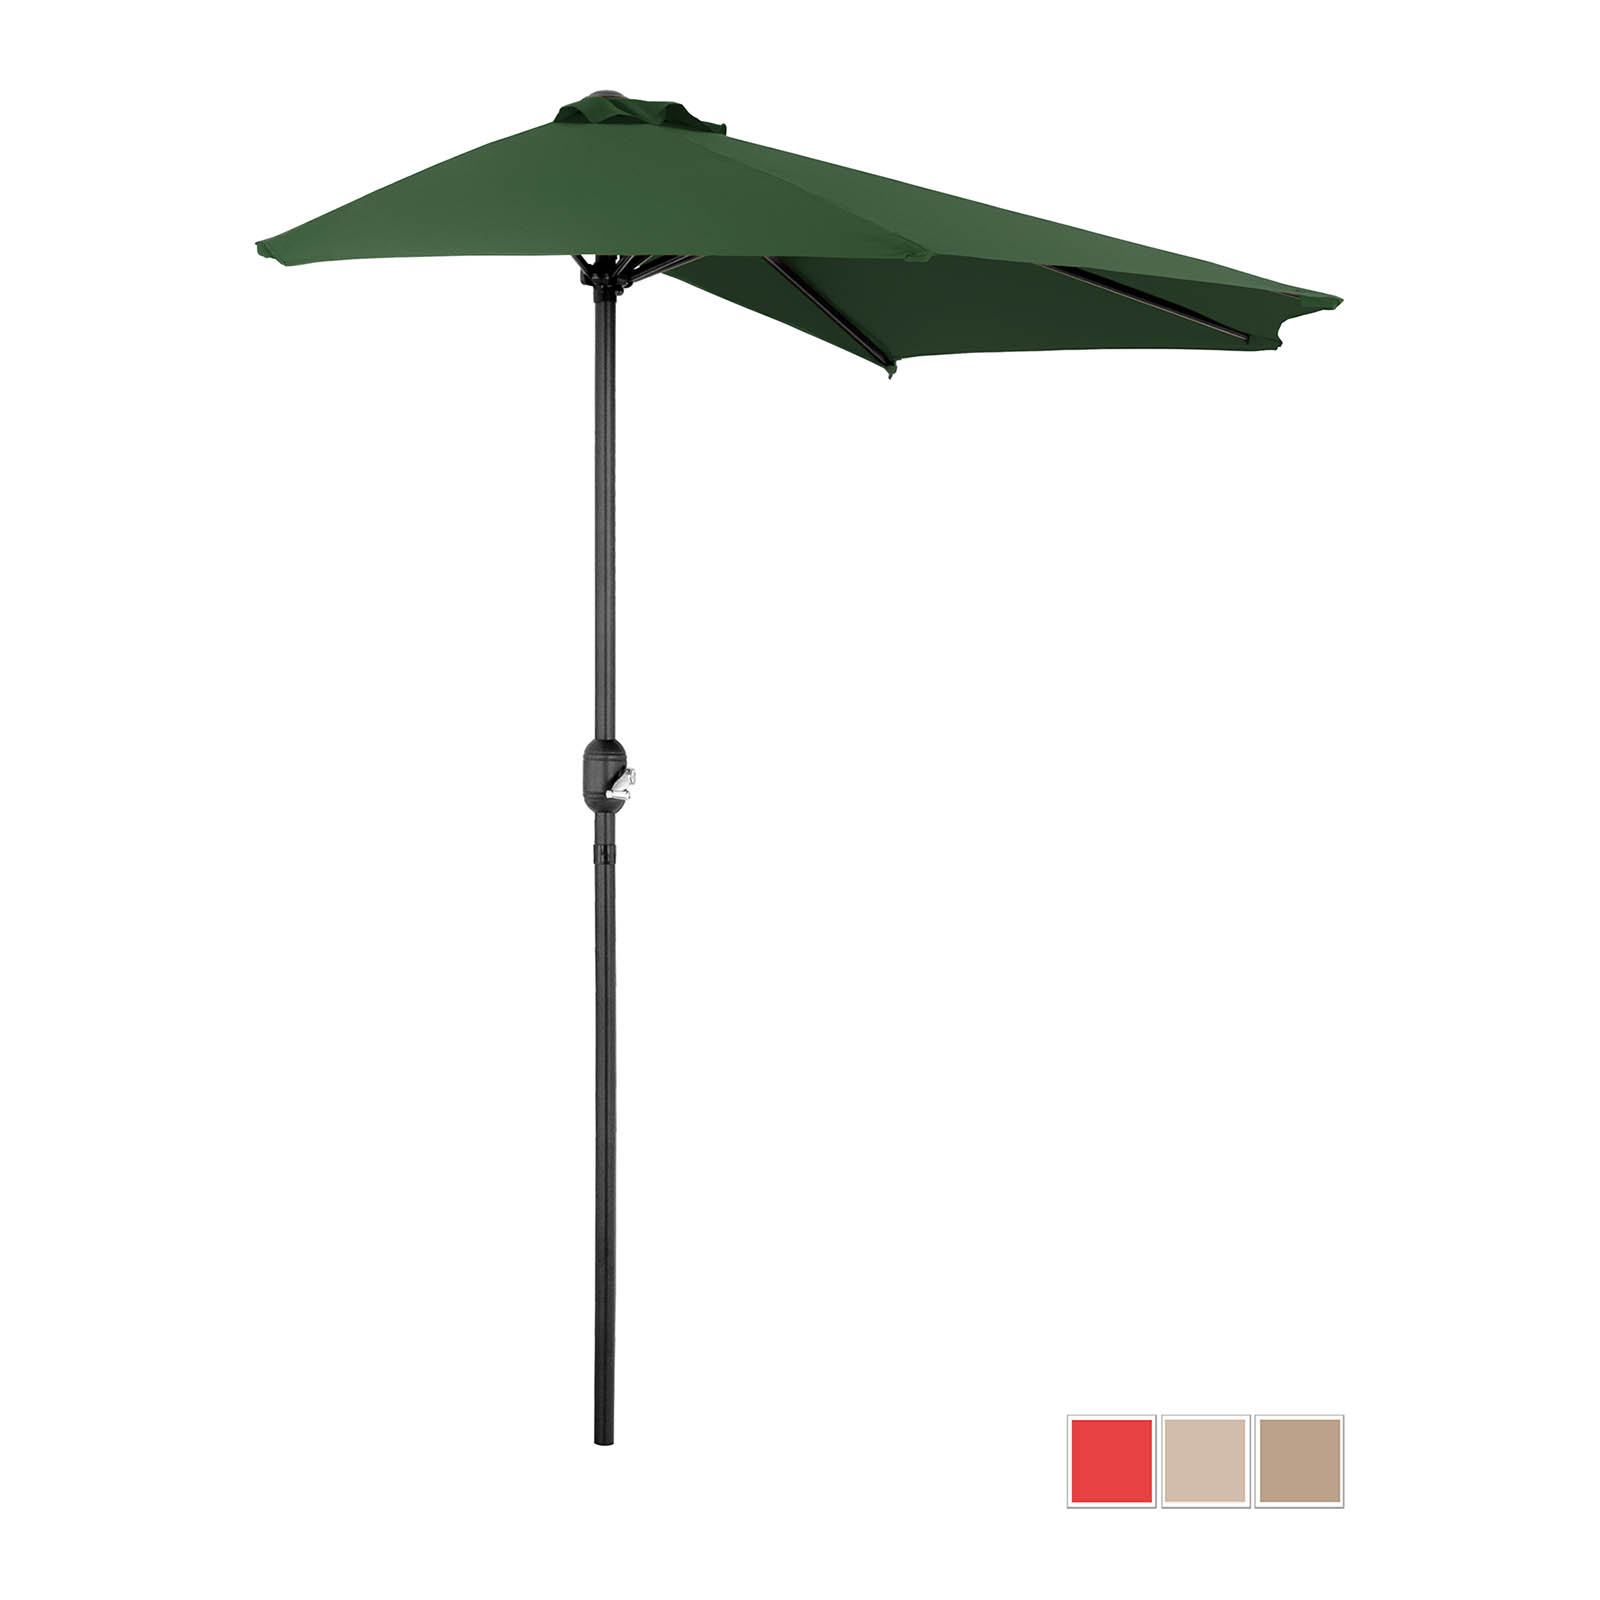 Halv parasol - Green - femkantet - 270 x 135 cm